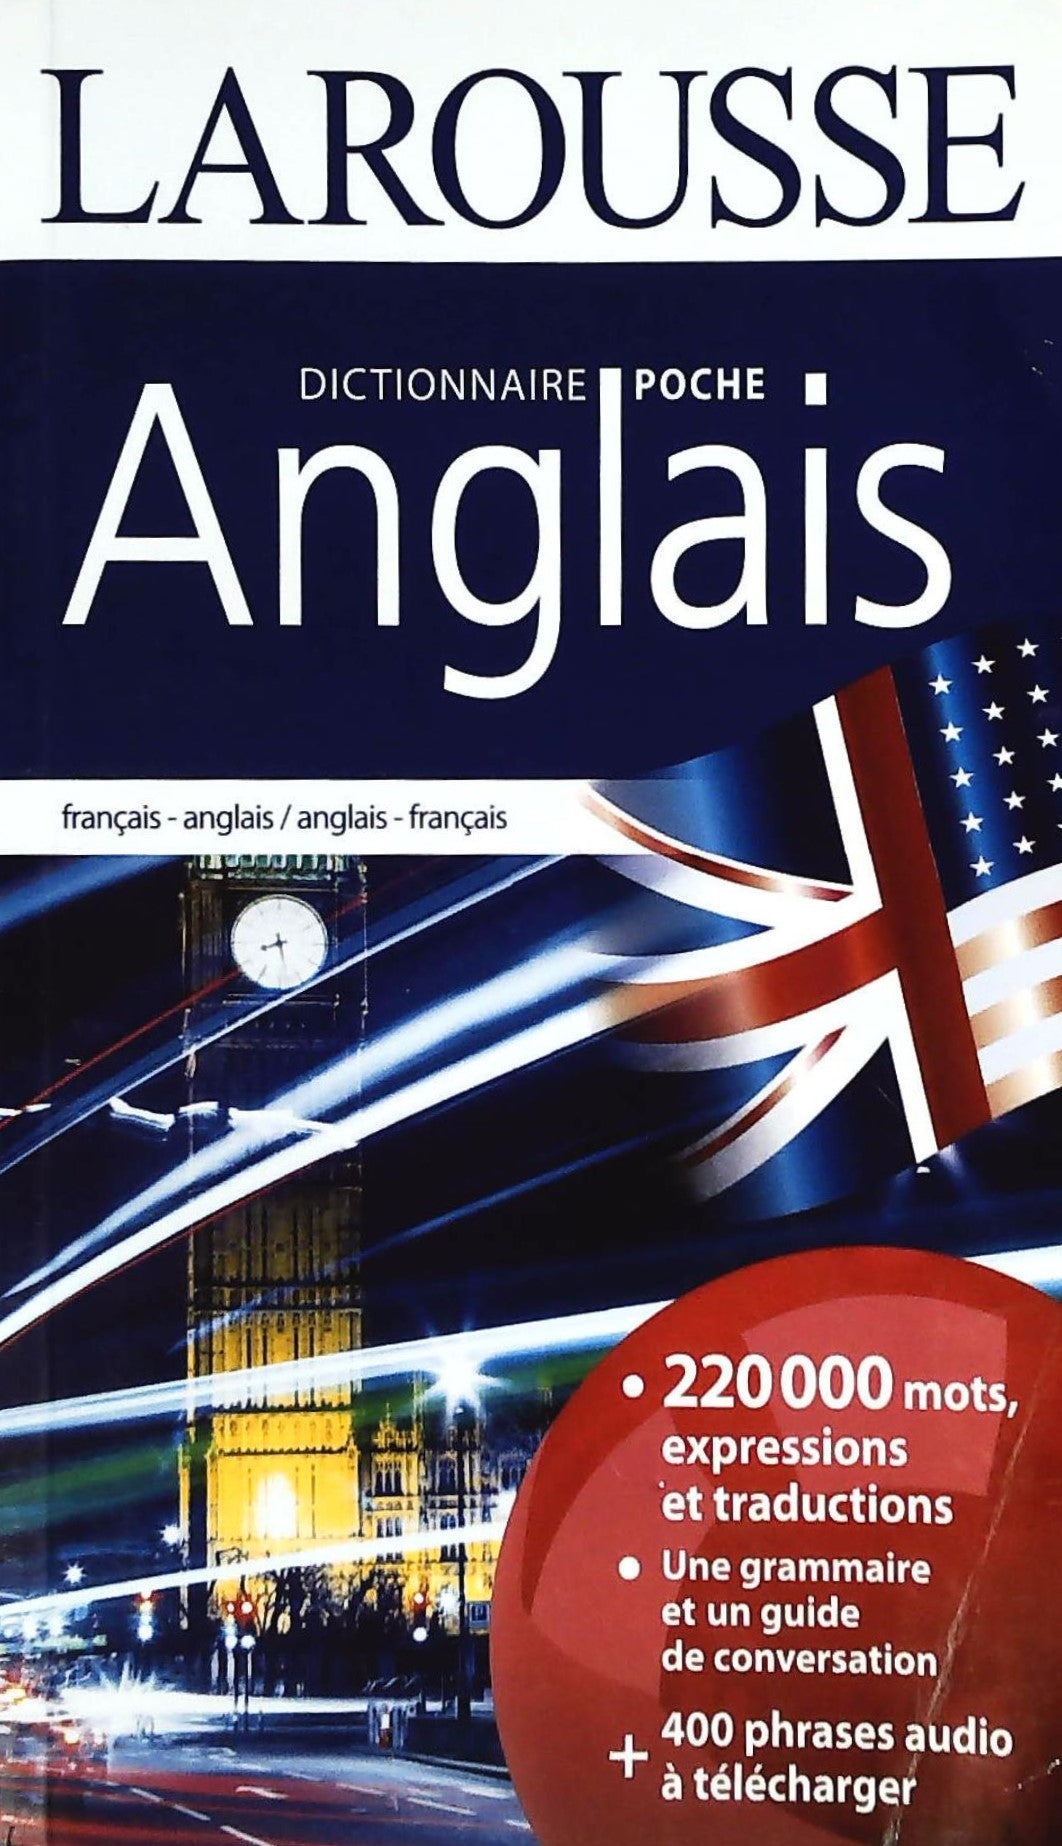 Livre ISBN 2035915740 Dictionnaire Poche Larousse Anglais-Français